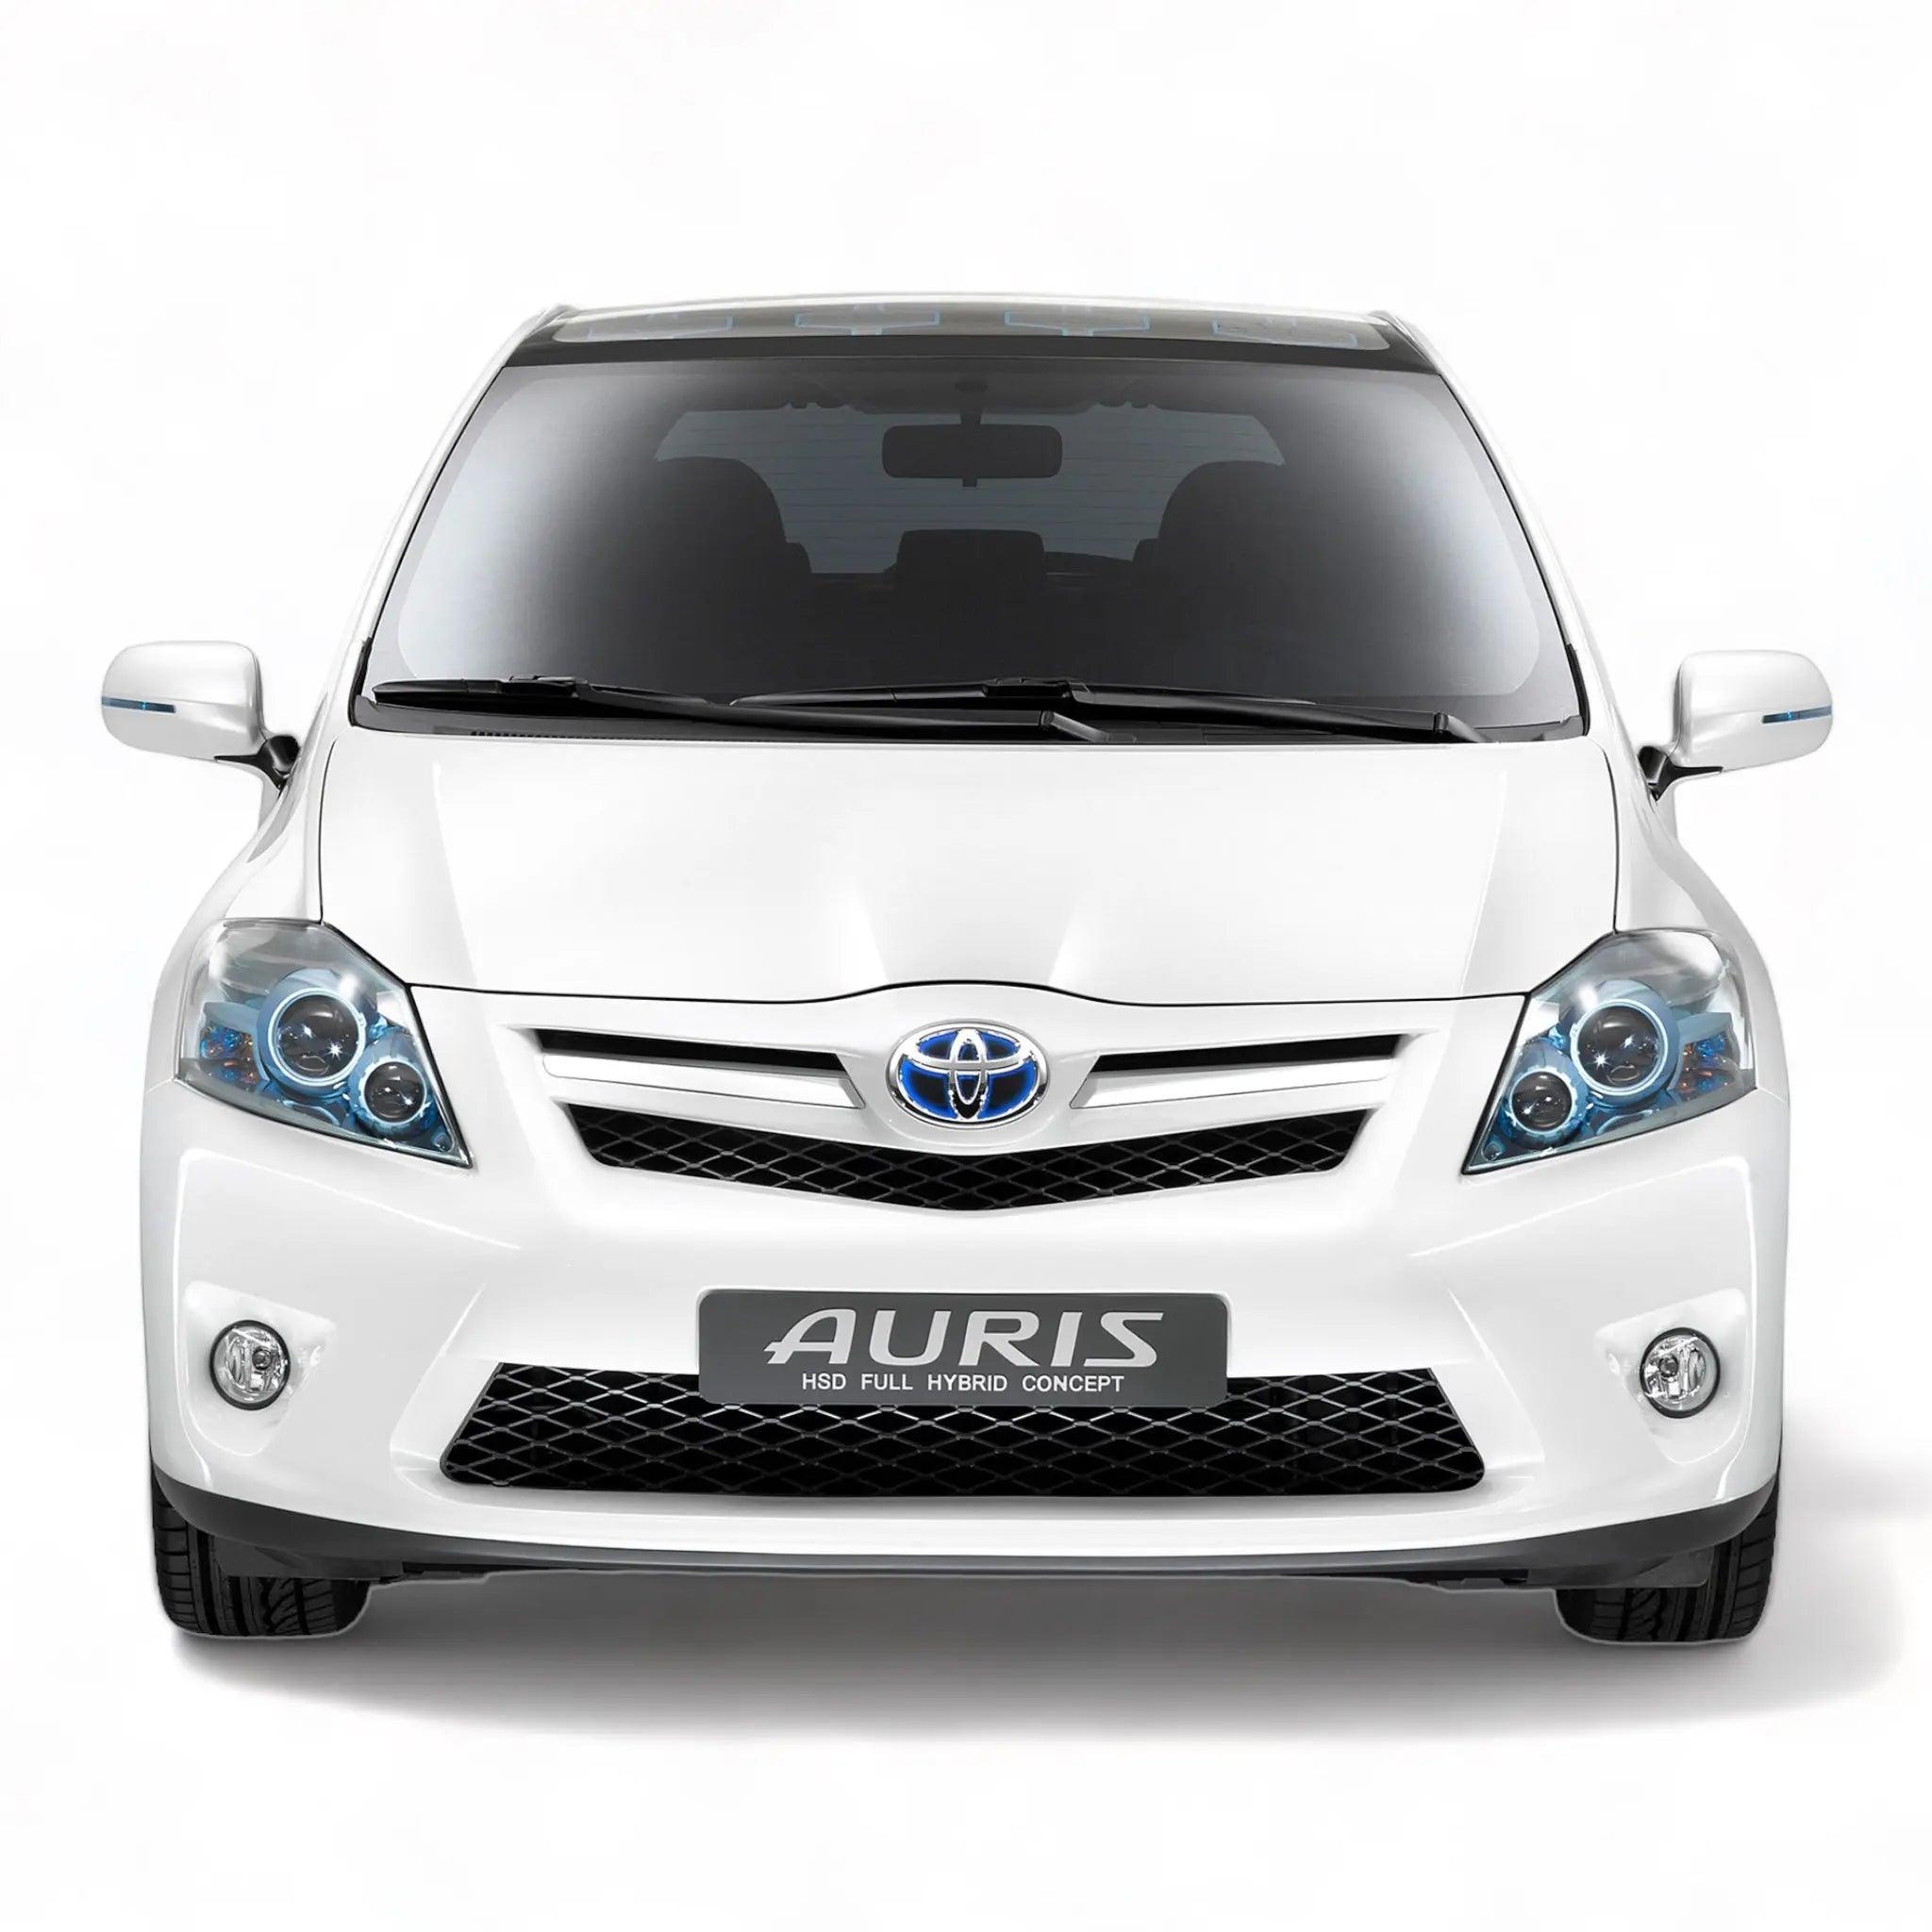 Auris-2007-2010 AutoWin